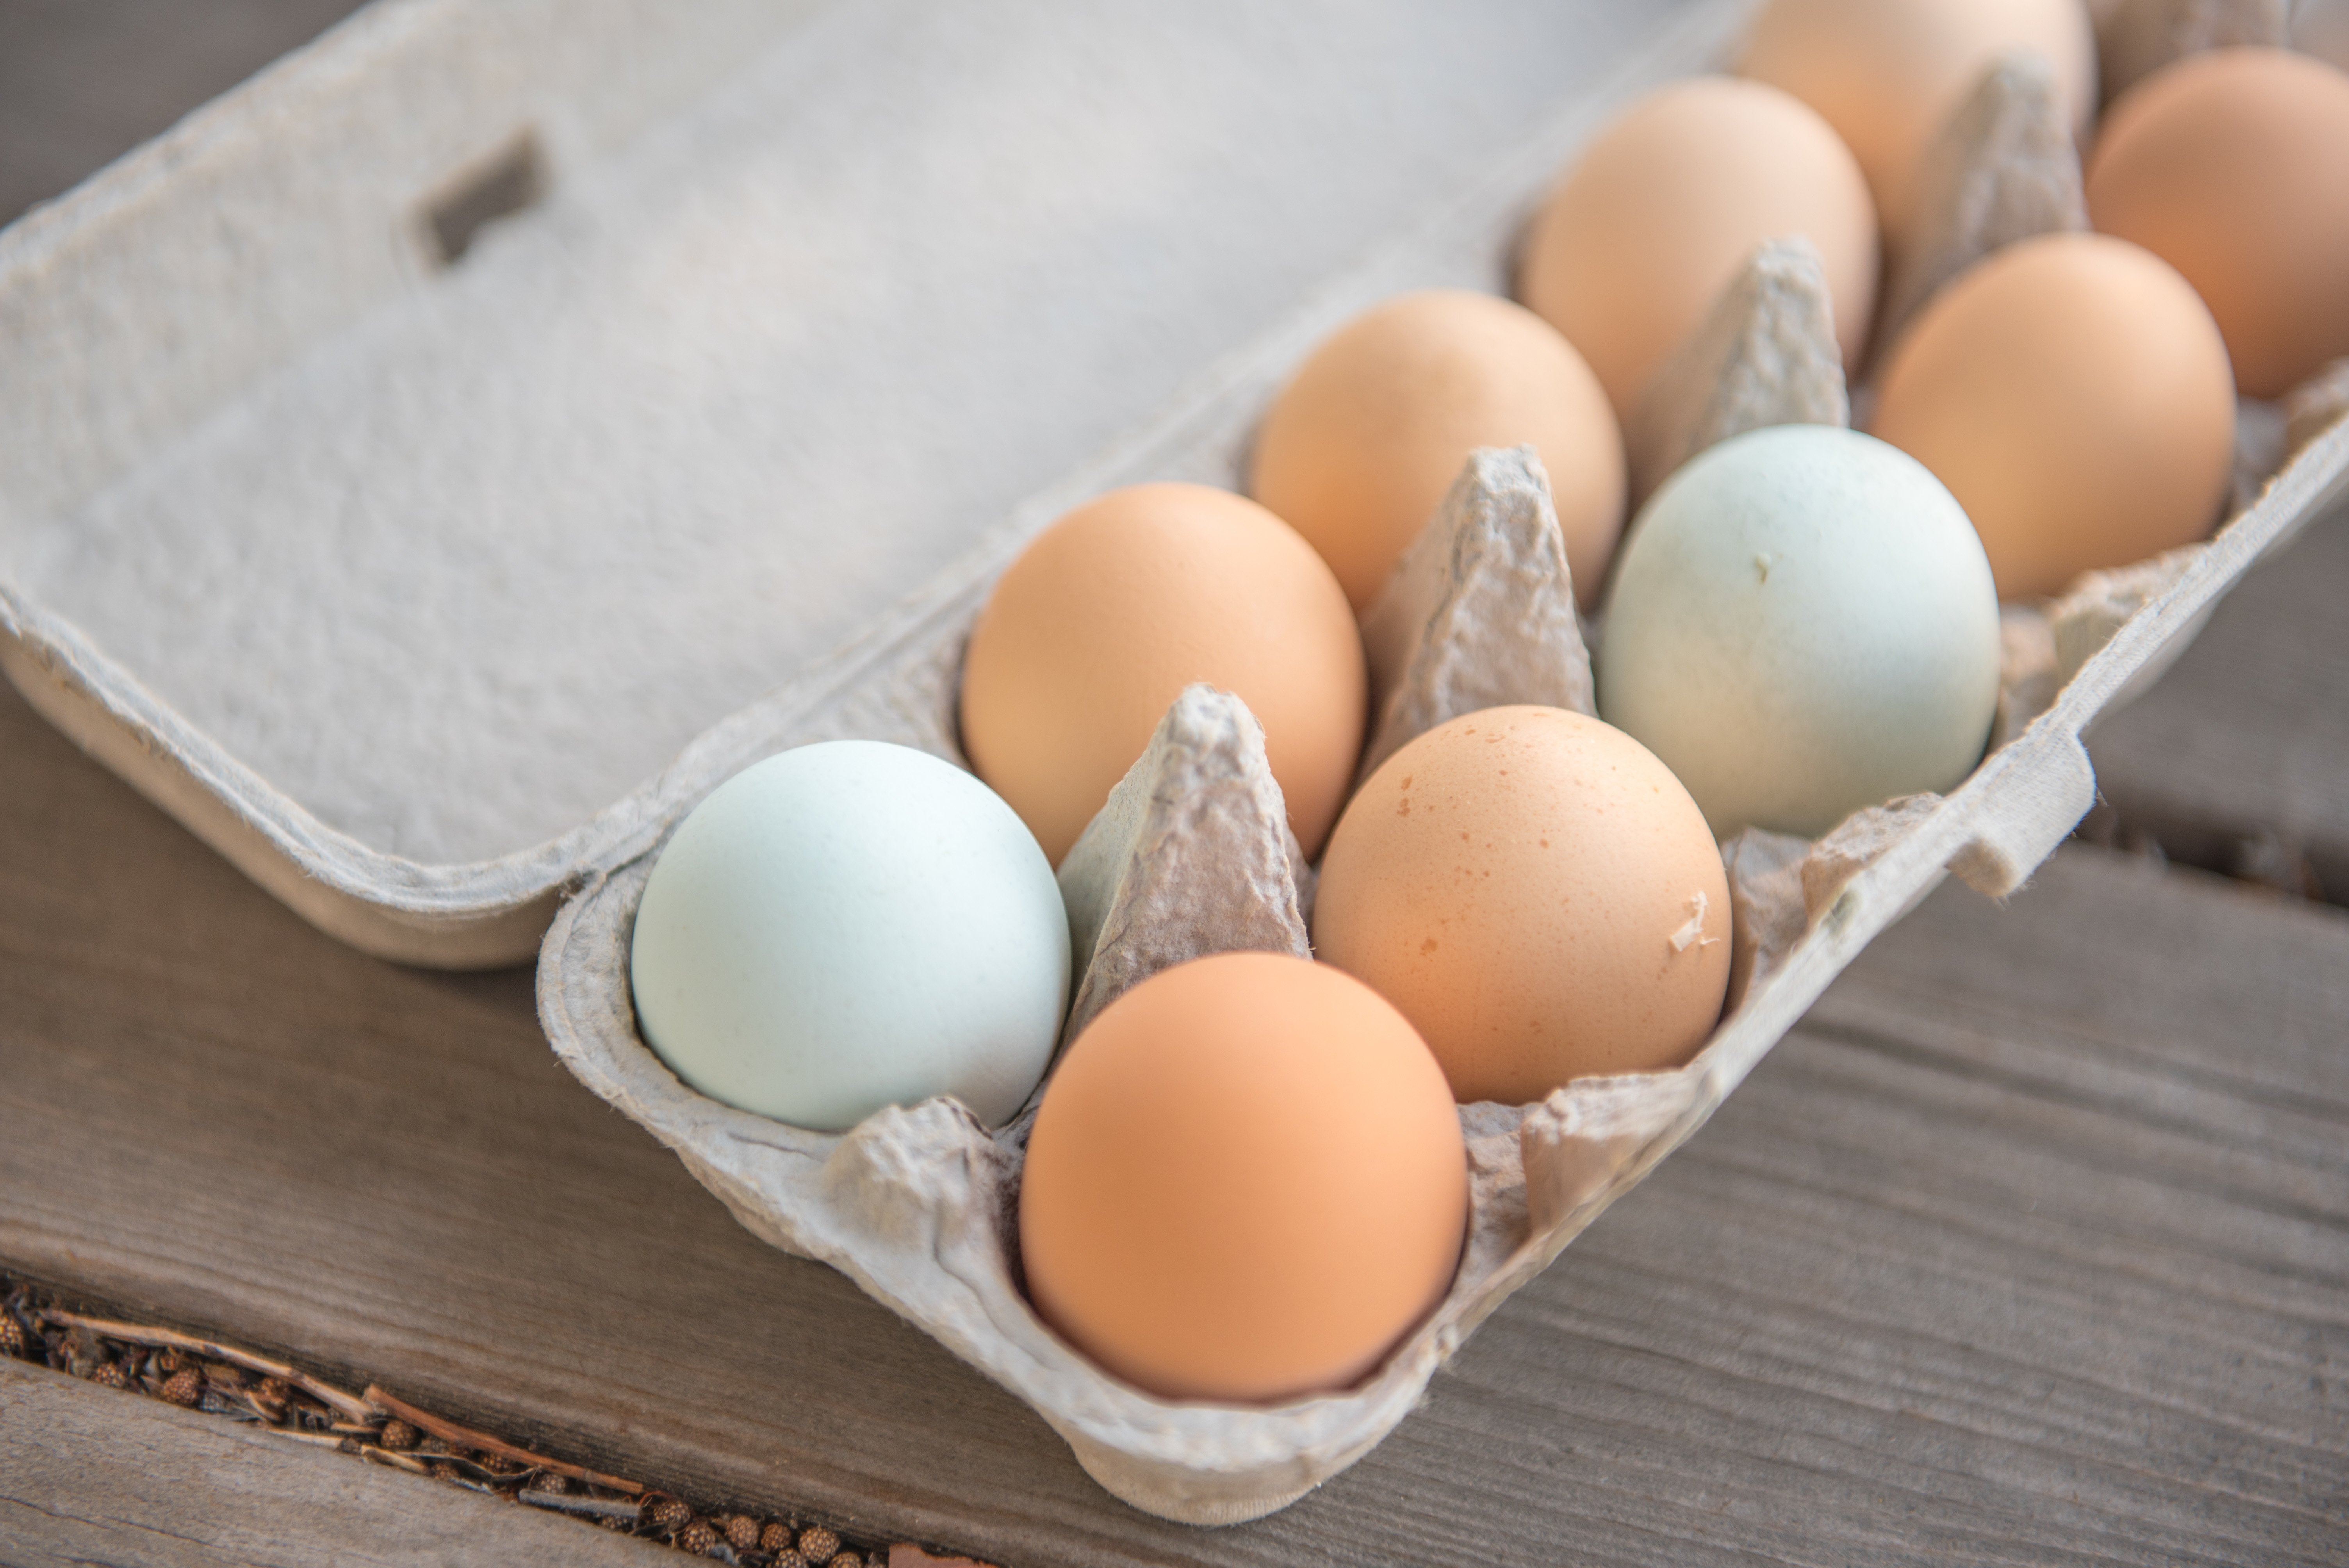 Яйца хорошо помойте. Делать это обязательно, ведь на скорлупе содержится огромное количество бактерий. Вбейте в мисочку и размешайте вилкой. Вы можете и не размешивать яйца, если желаете оставить целиковые желтки.